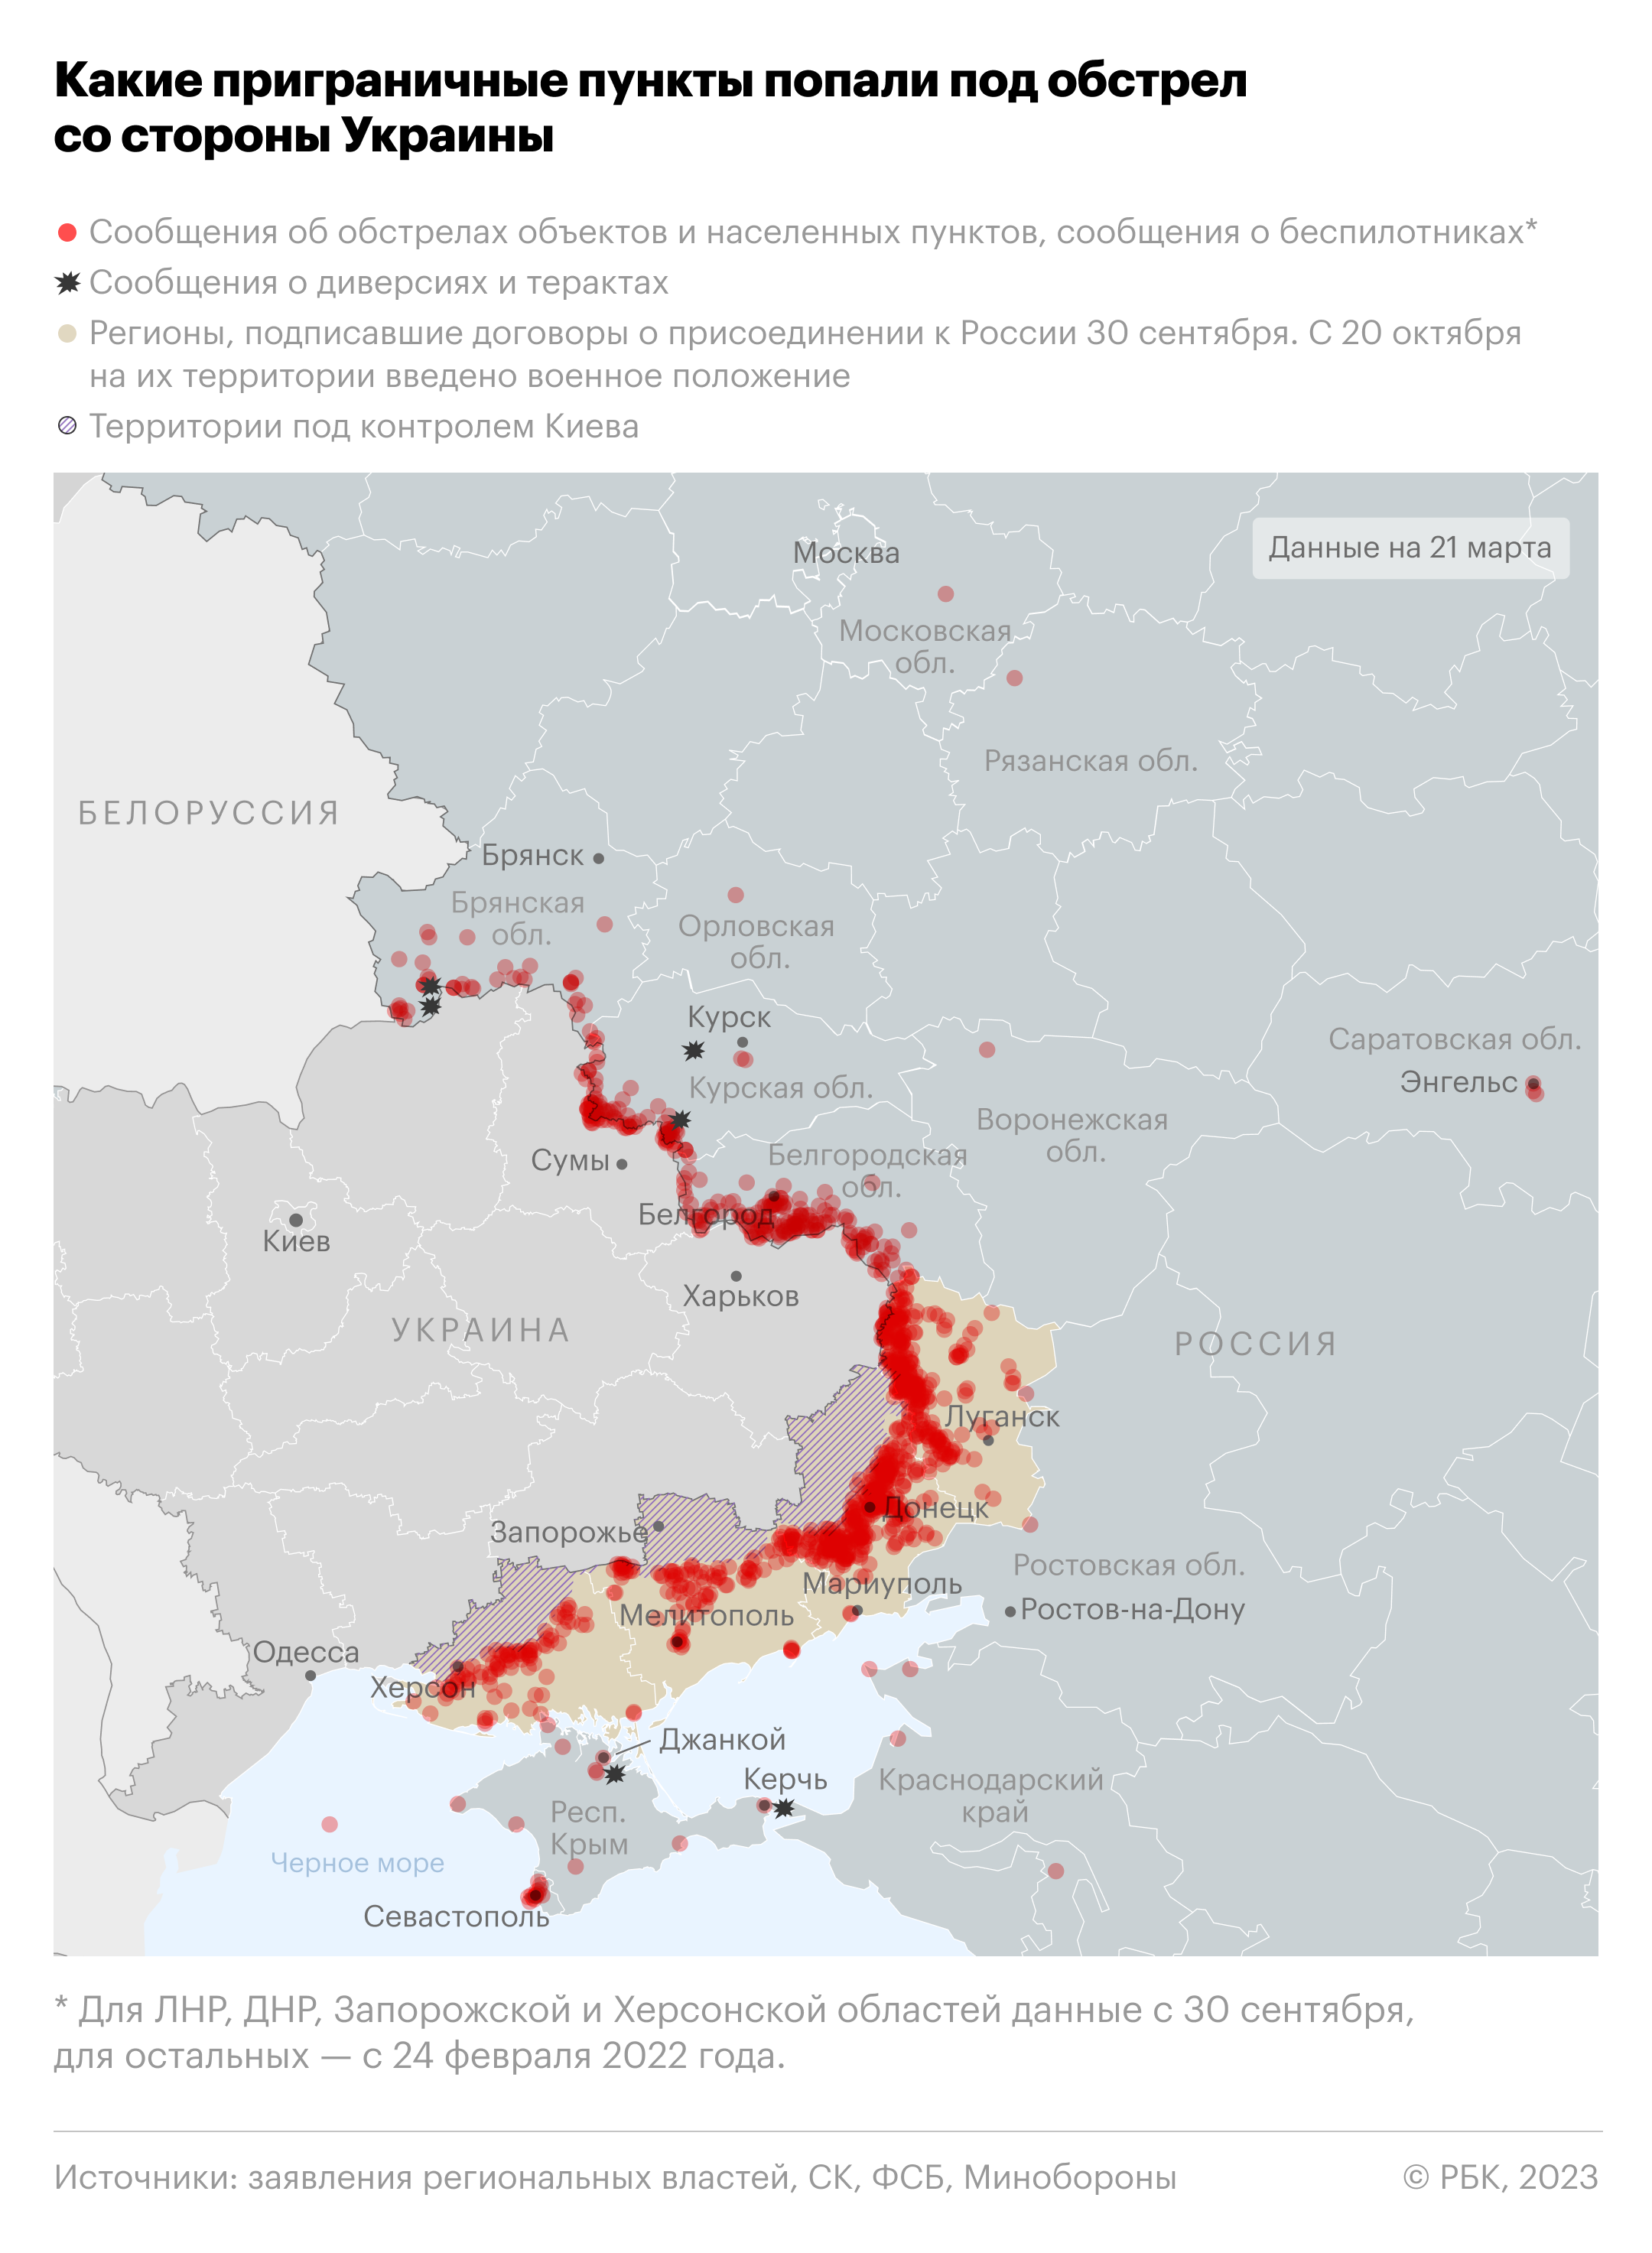 Четыре населенных пункта Курской области лишились света из-за обстрела